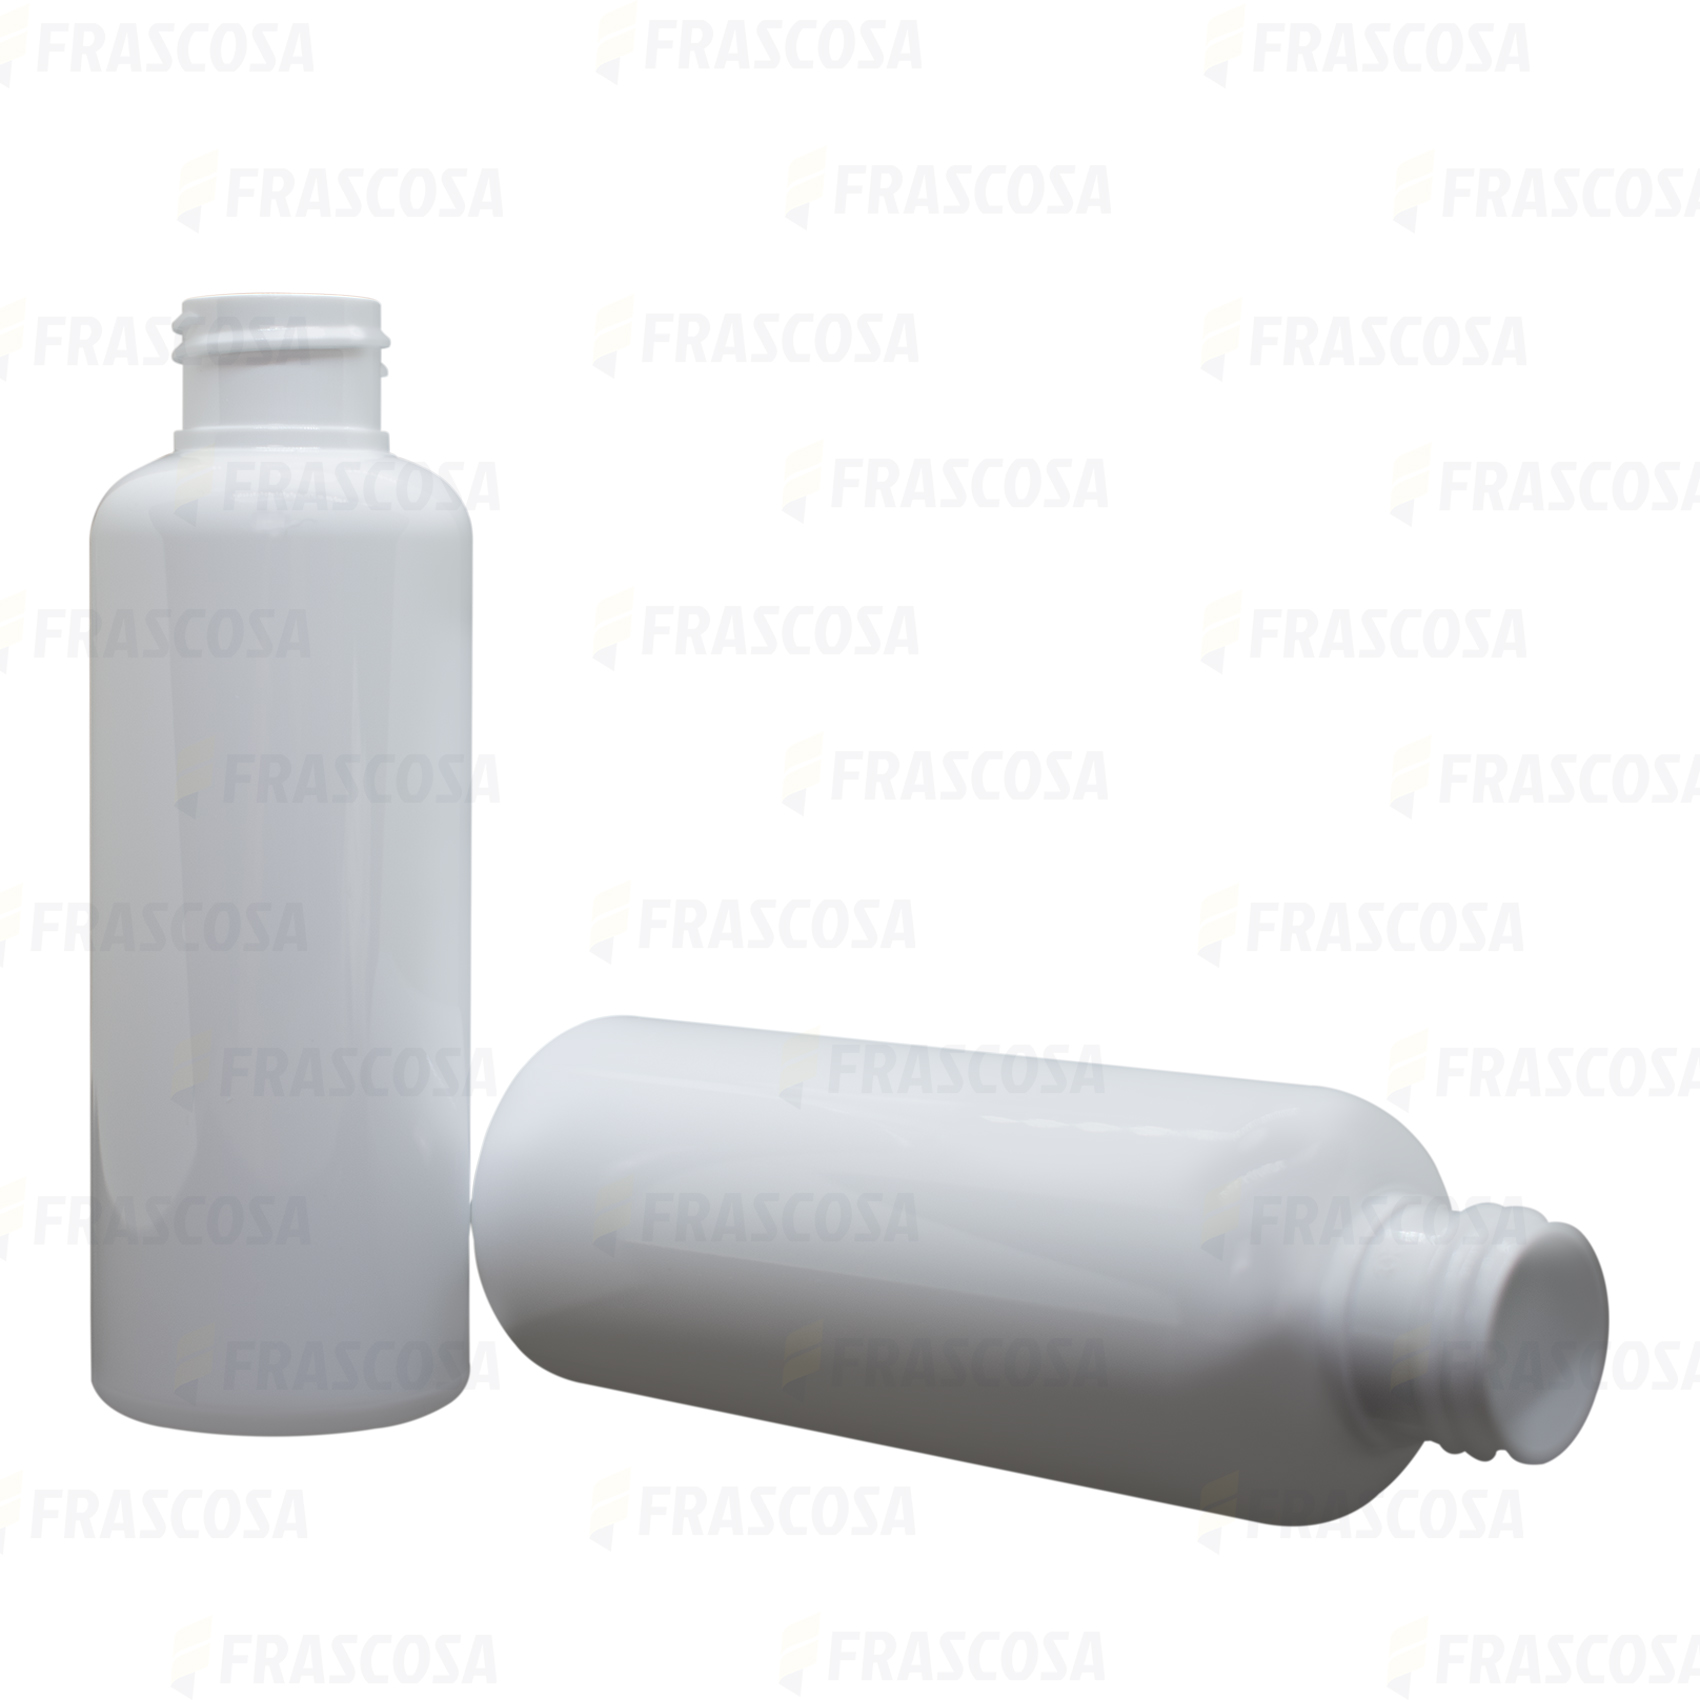 Botella aluminio cilíndrica 24/410 